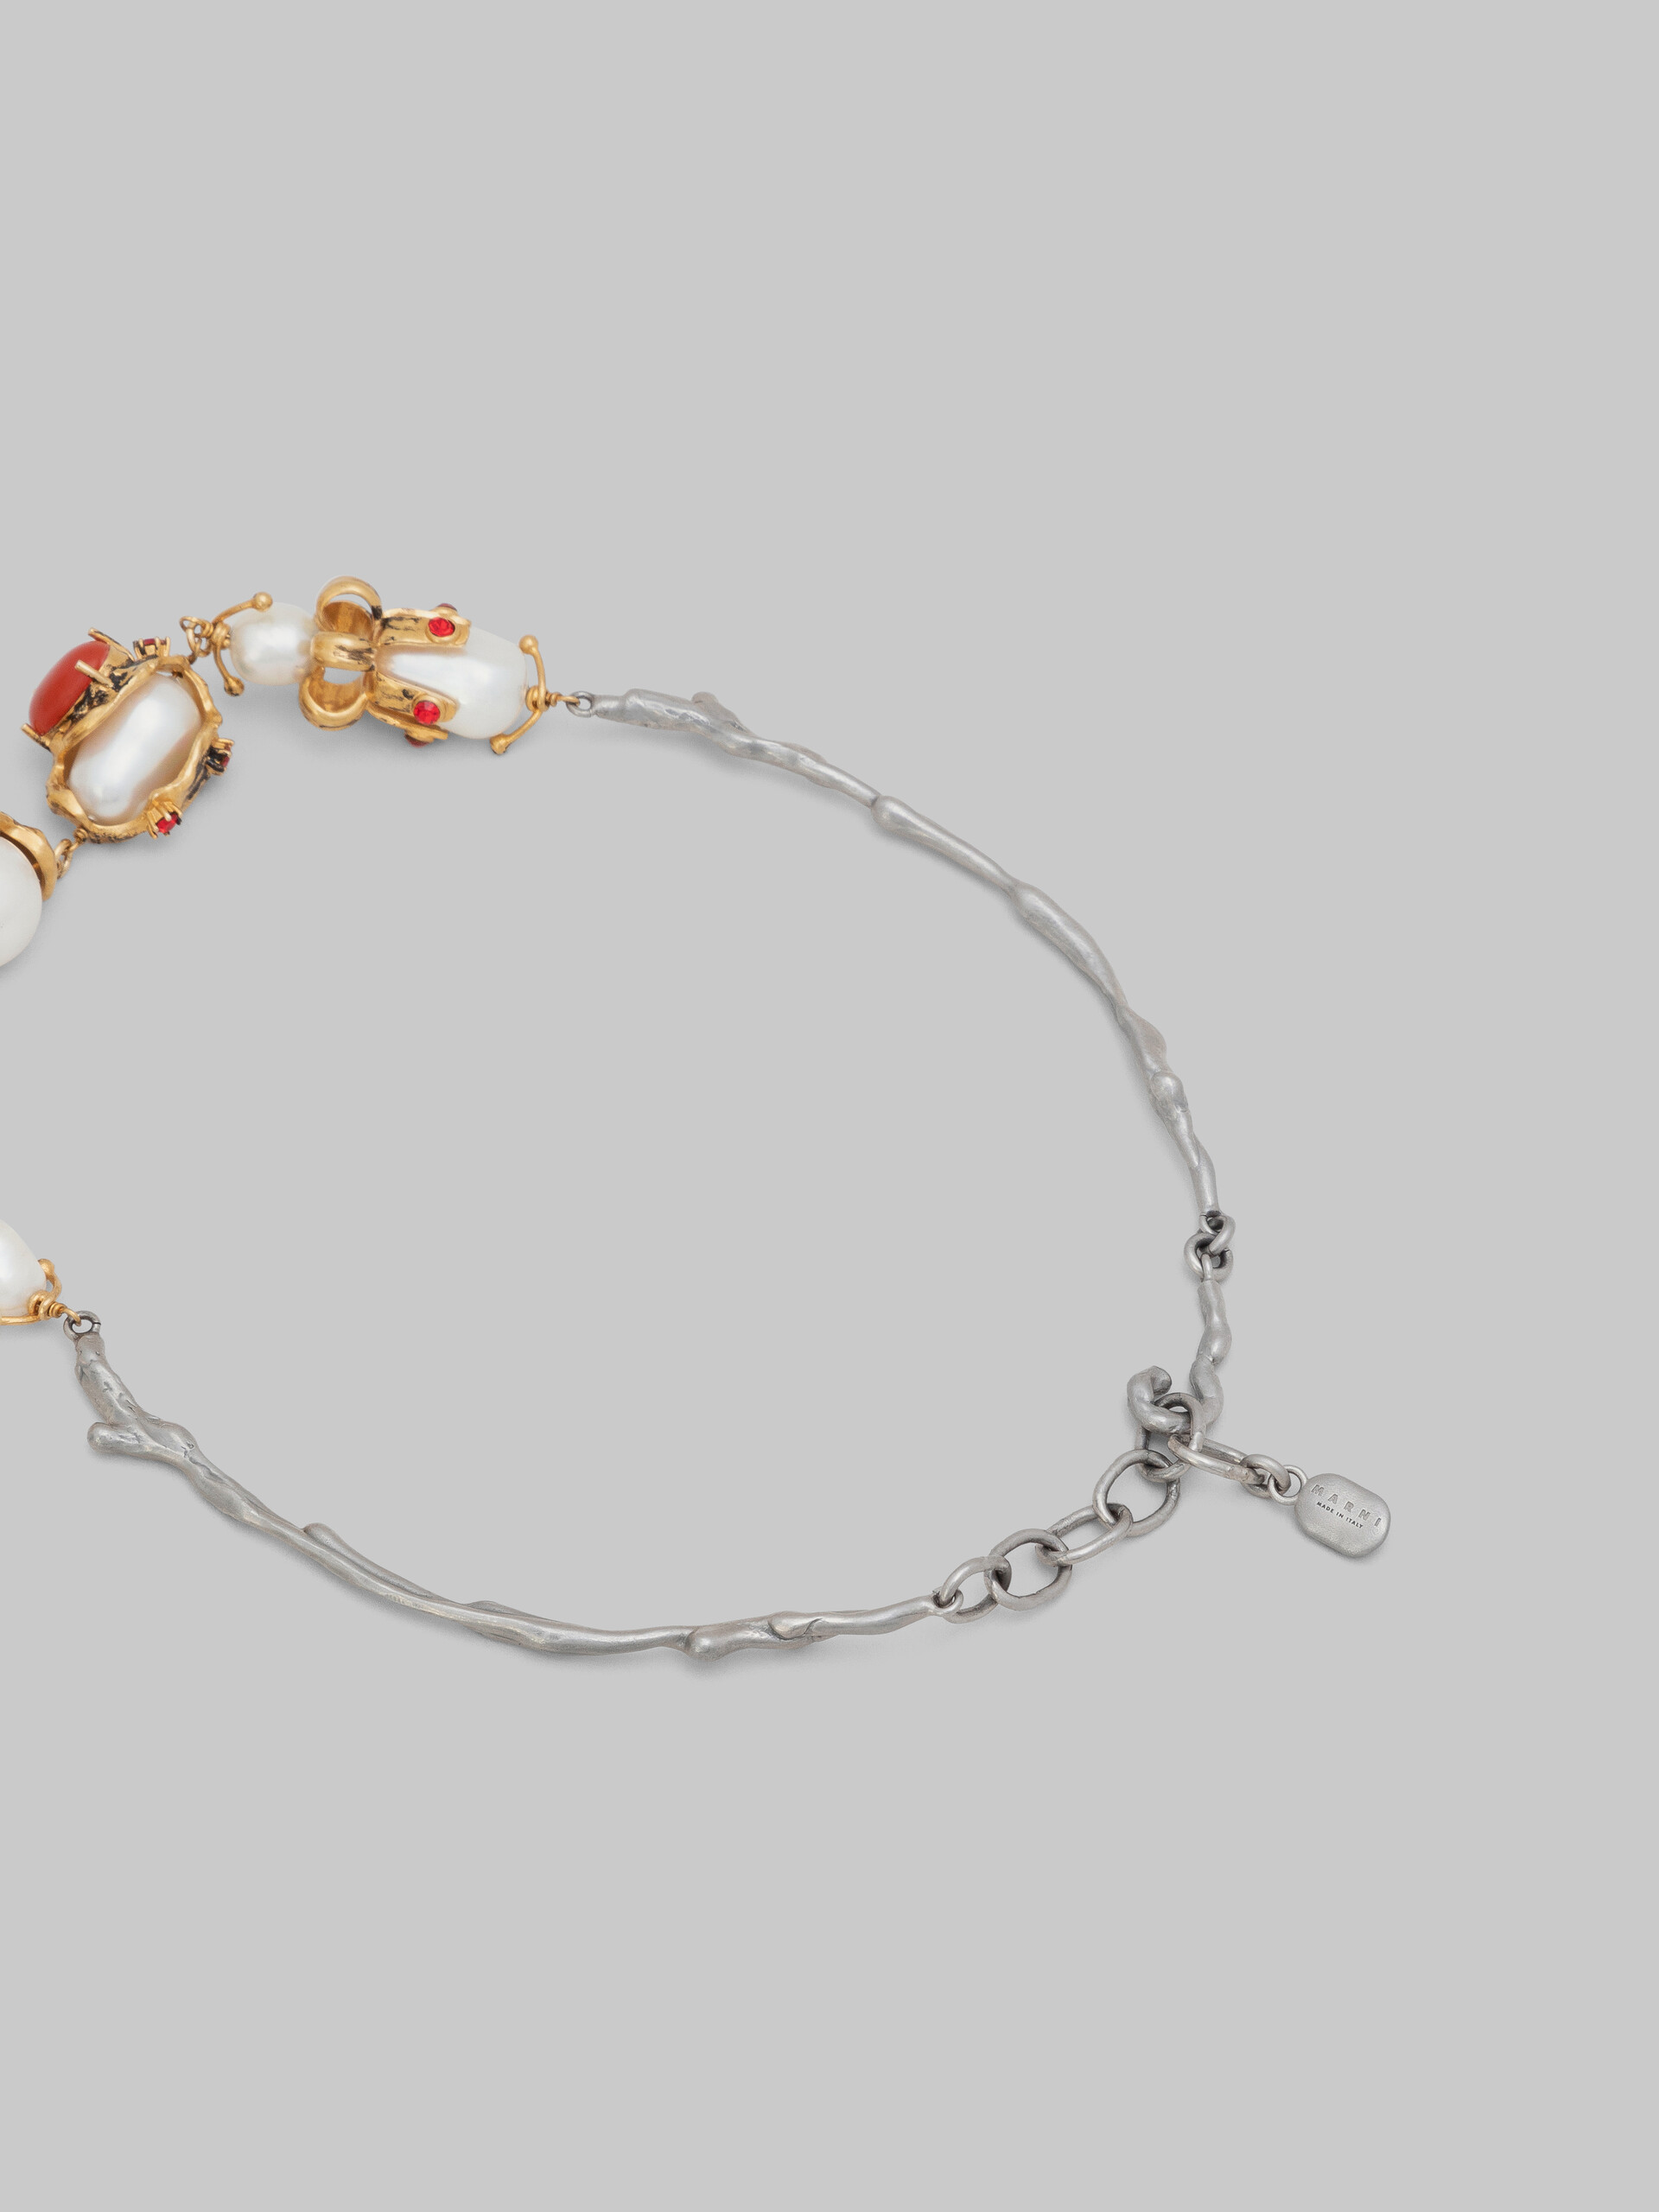 ゴールド パラジウム製ネックレス、 ケース入りパールチャーム - ネックレス - Image 4